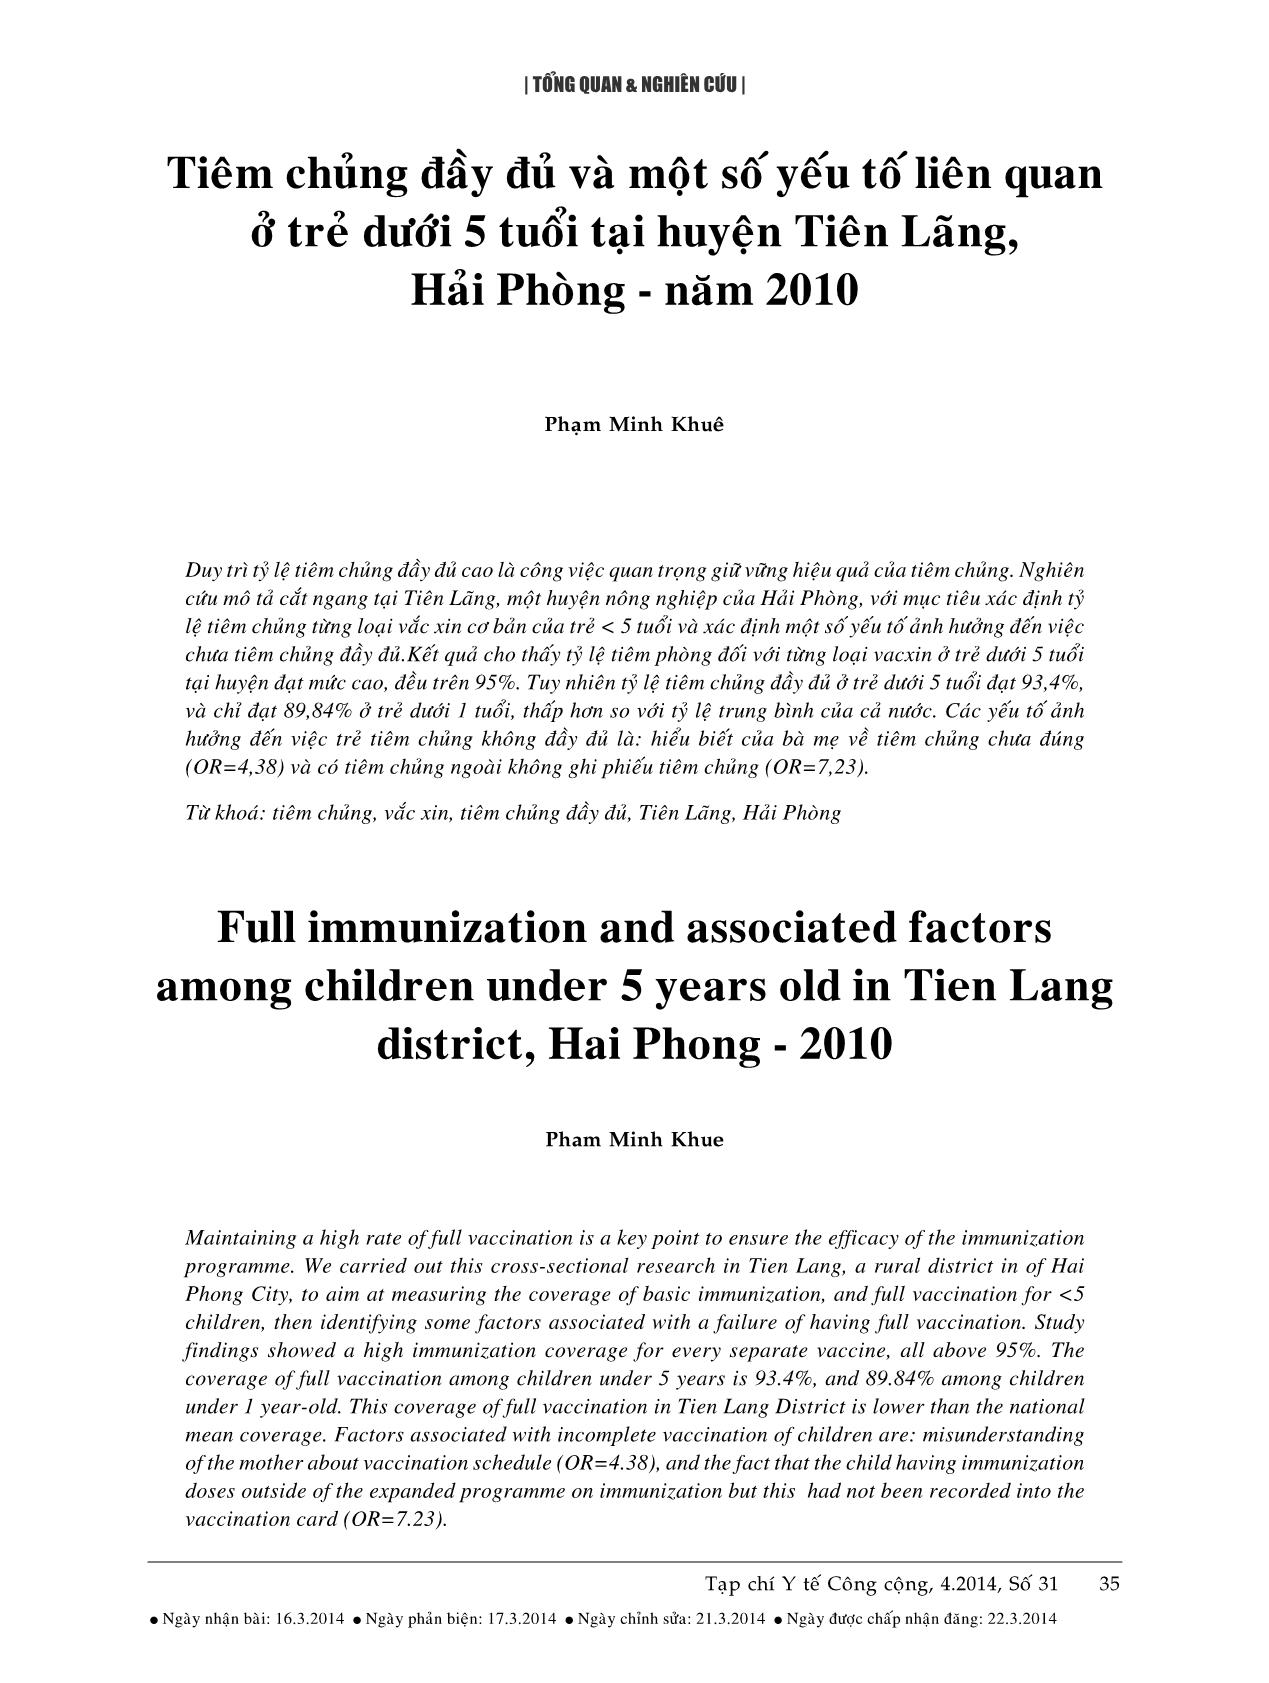 Tiêm chủng đầy đủ và một số yếu tố liên quan ở trẻ dưới 5 tuổi tại huyện Tiên Lãng, Hải Phòng - Năm 2010 trang 1